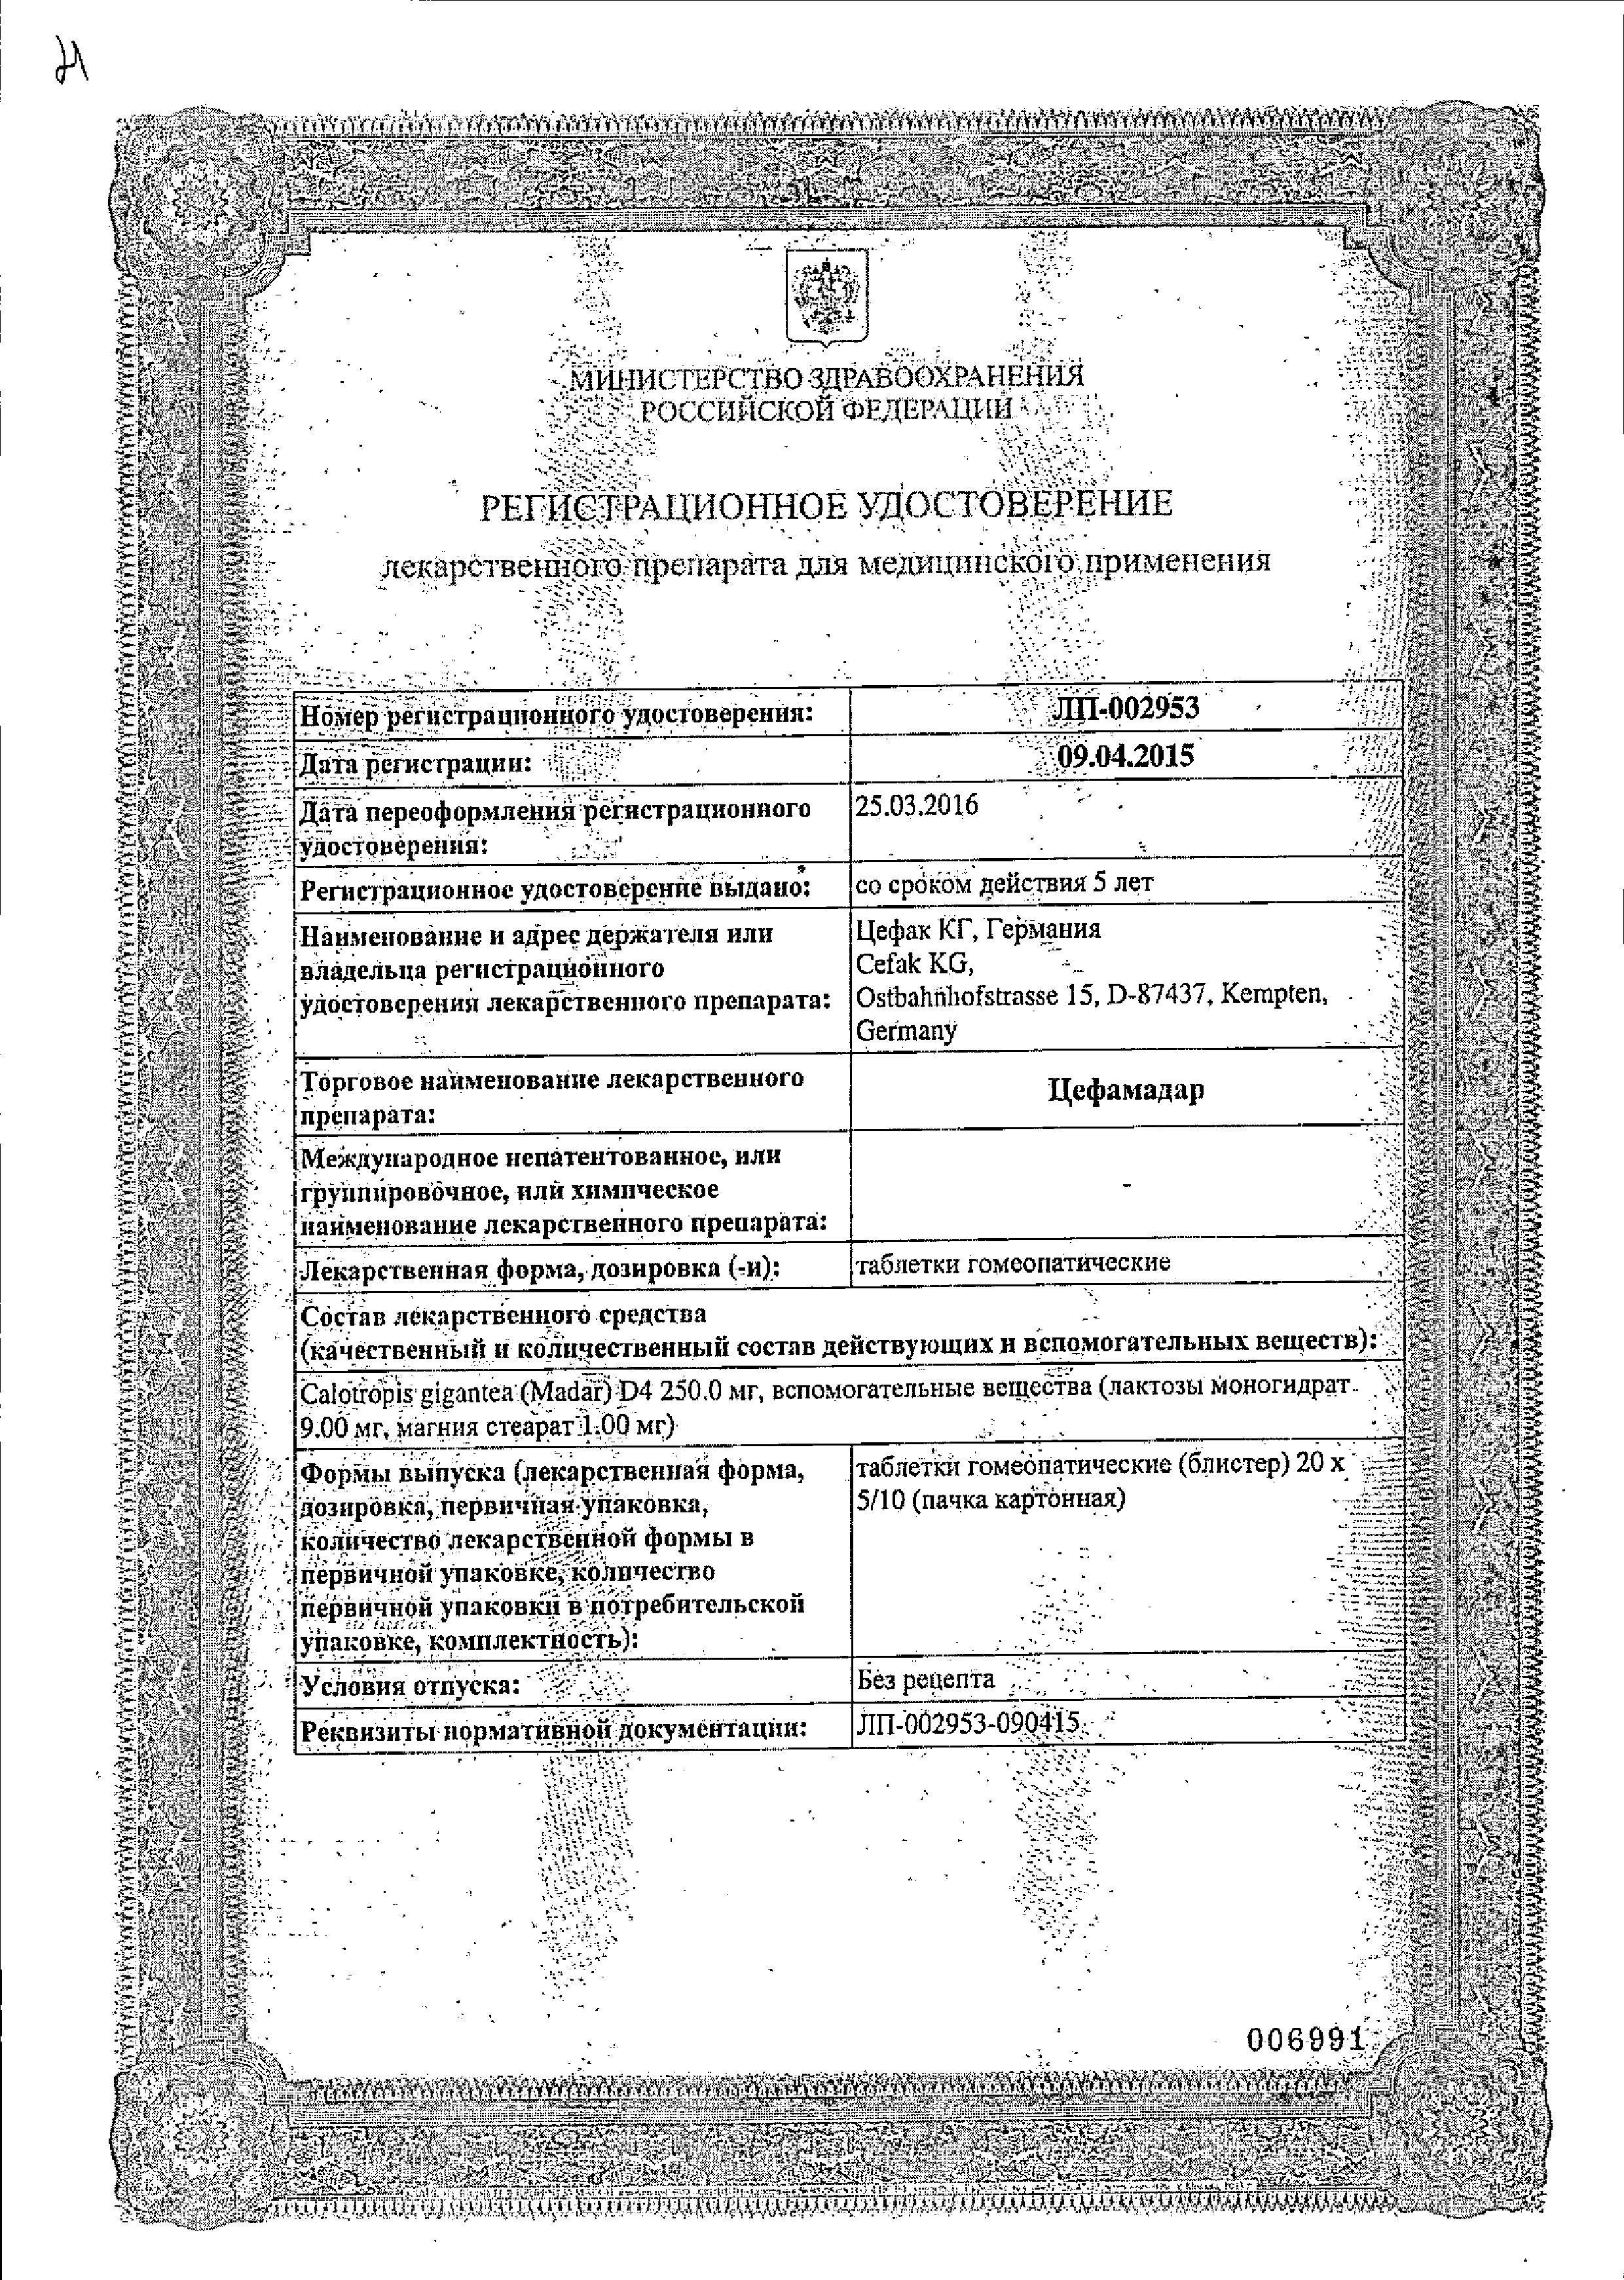 Цефамадар сертификат